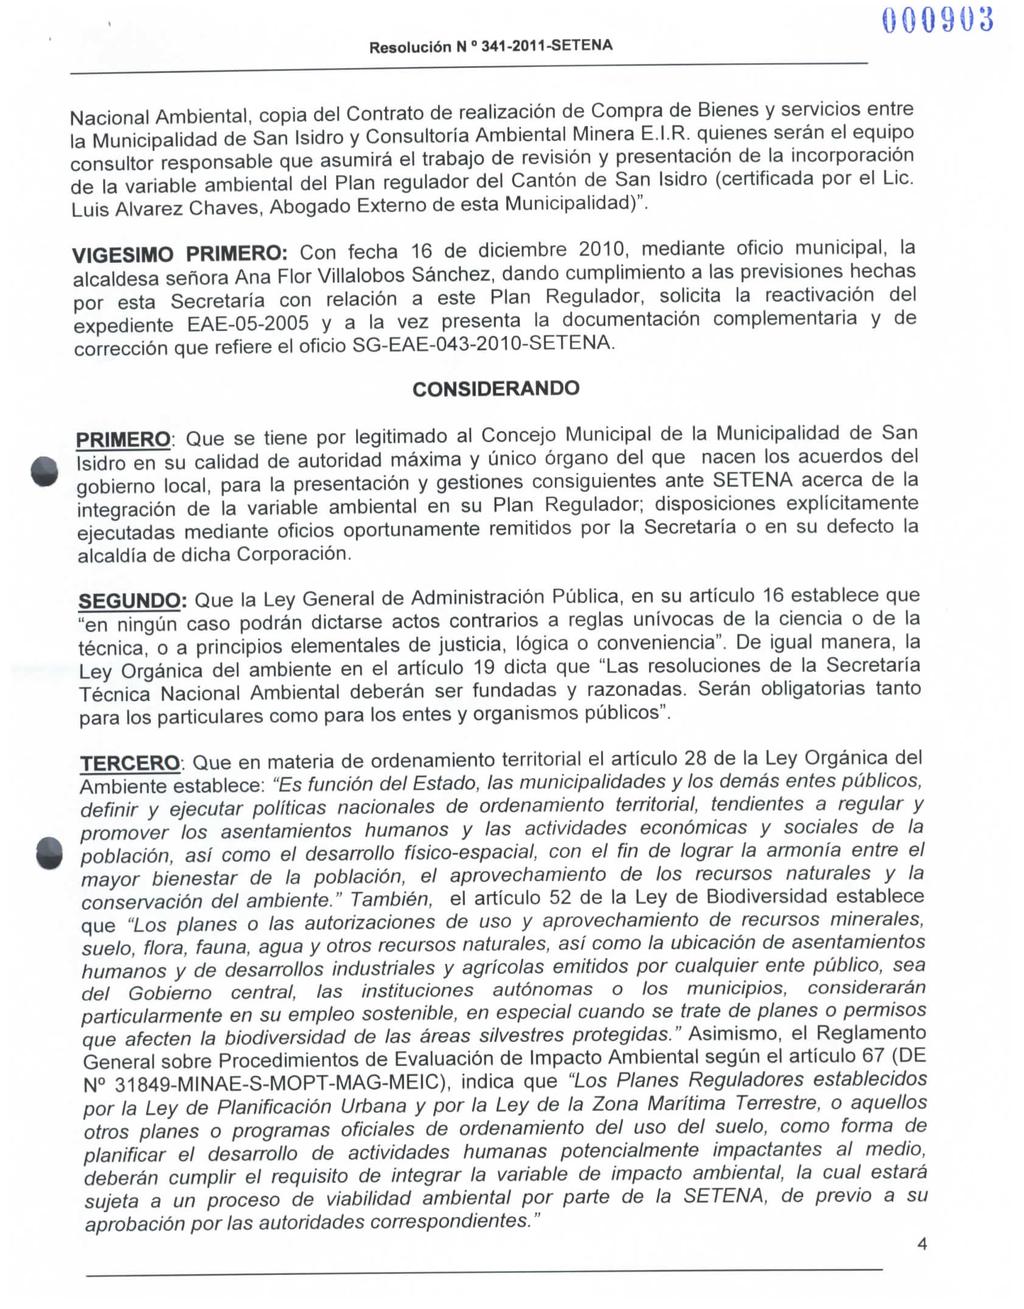 Nacional Ambienta!, copia del Contrato de realización de Compra de Bienes y servicios entre la Municipalidad de San Isidro y Consultoría Ambiental Minera E.I.R.